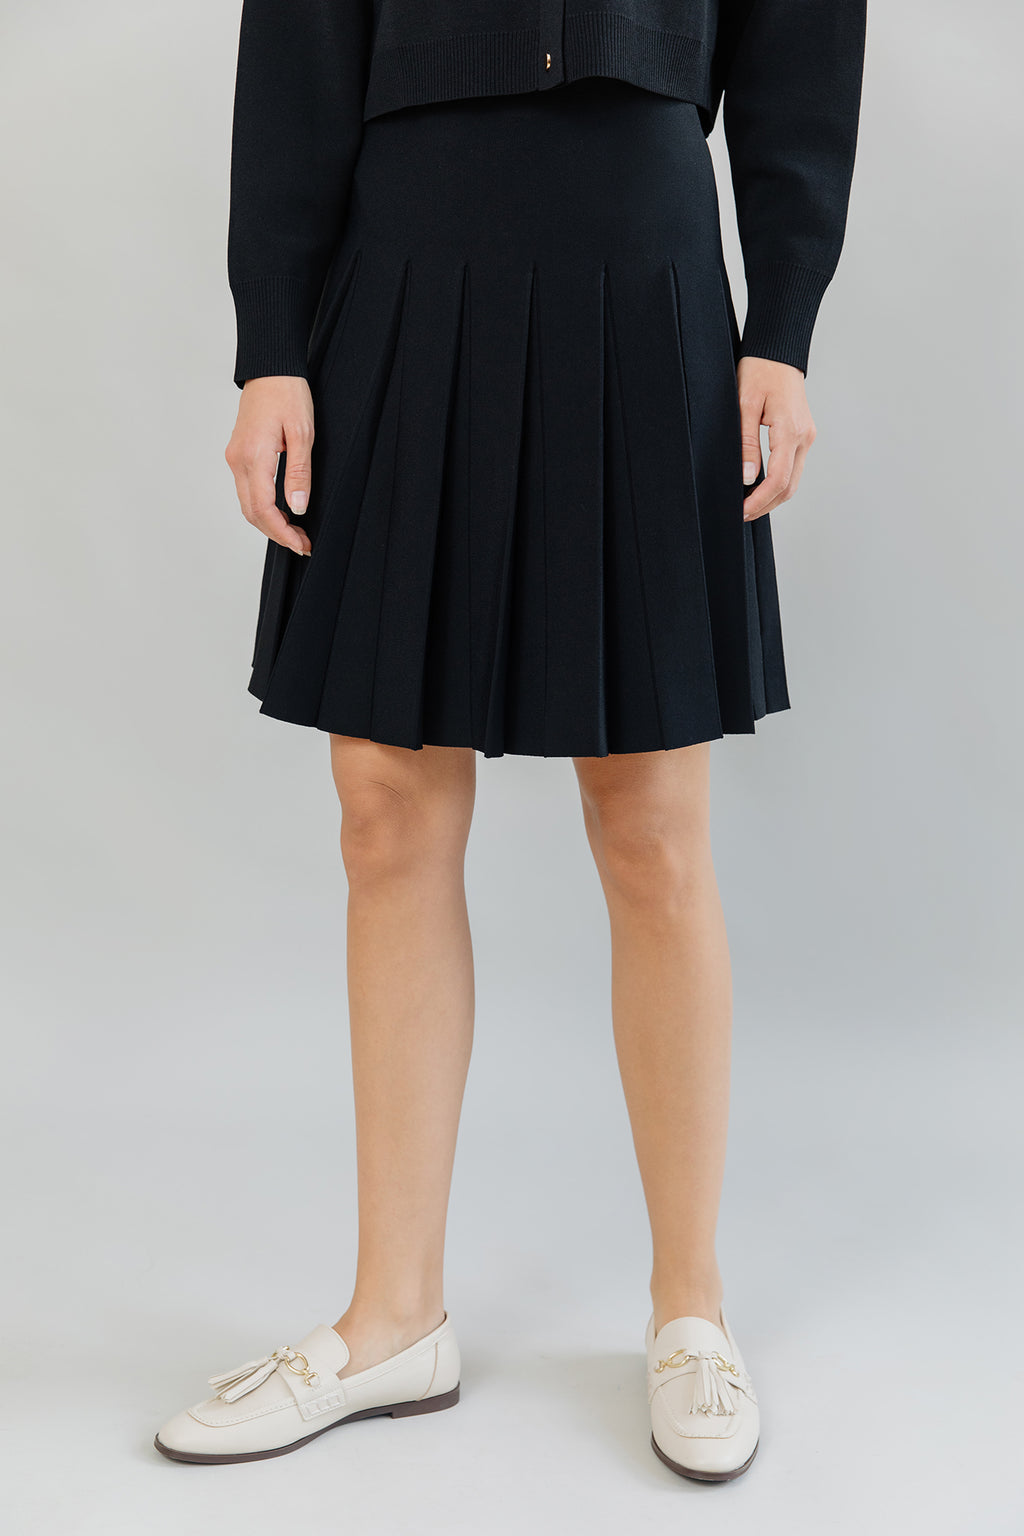 Delta Skirt in Black (Wide Pleat) – Apparalel